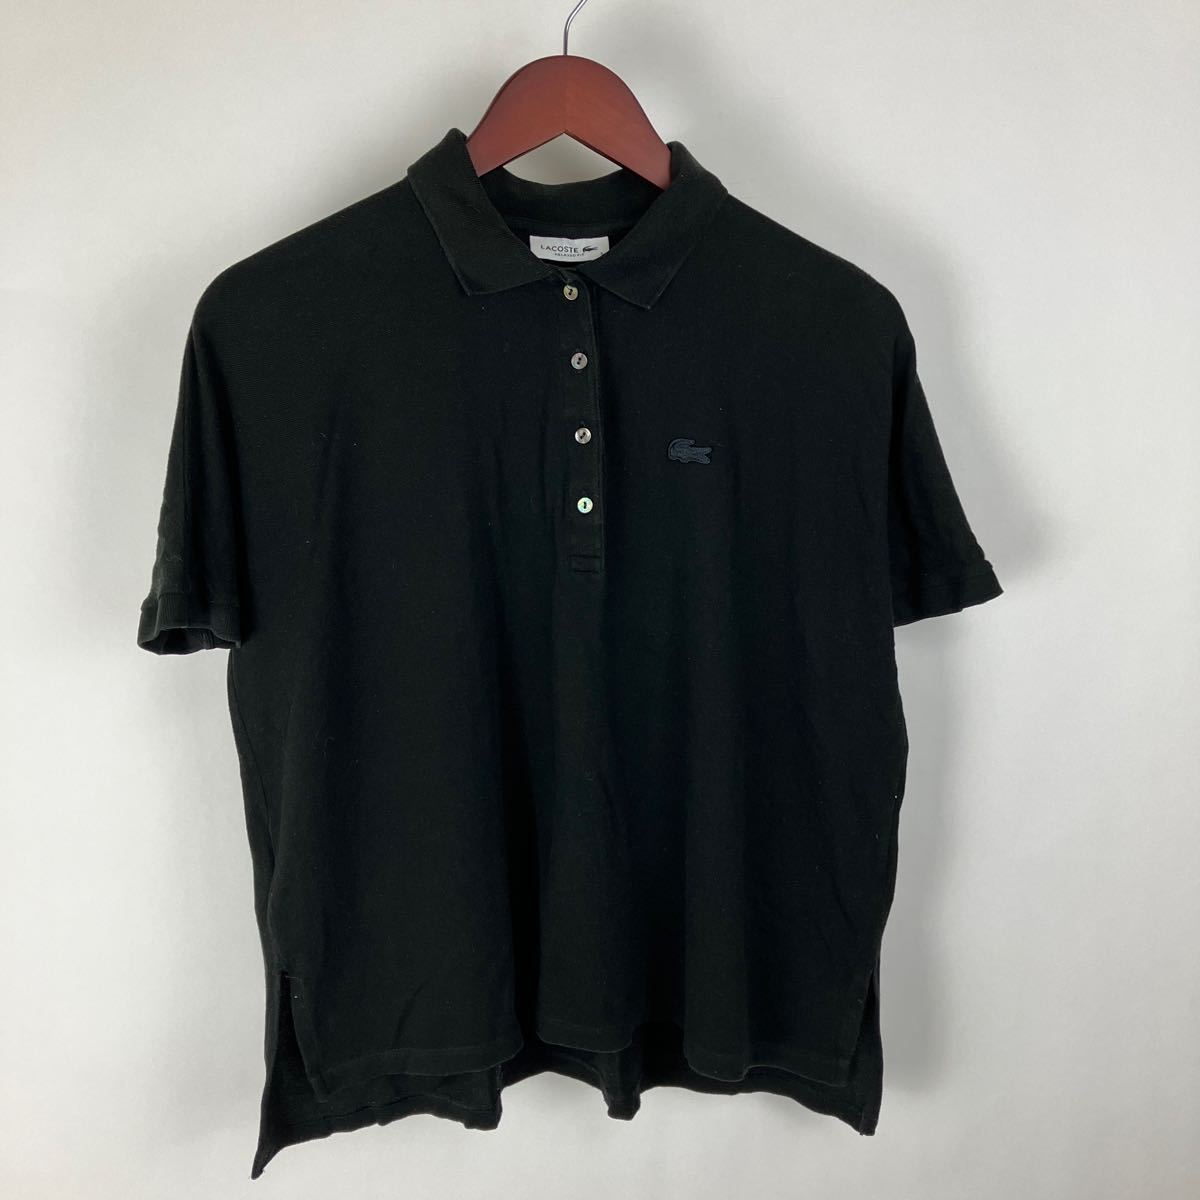 LACOSTE ラコステ 半袖 シャツ ポロシャツ レディース Sサイズ ブラック カジュアル スポーツ トレーニング golf ゴルフ ウェア FA161